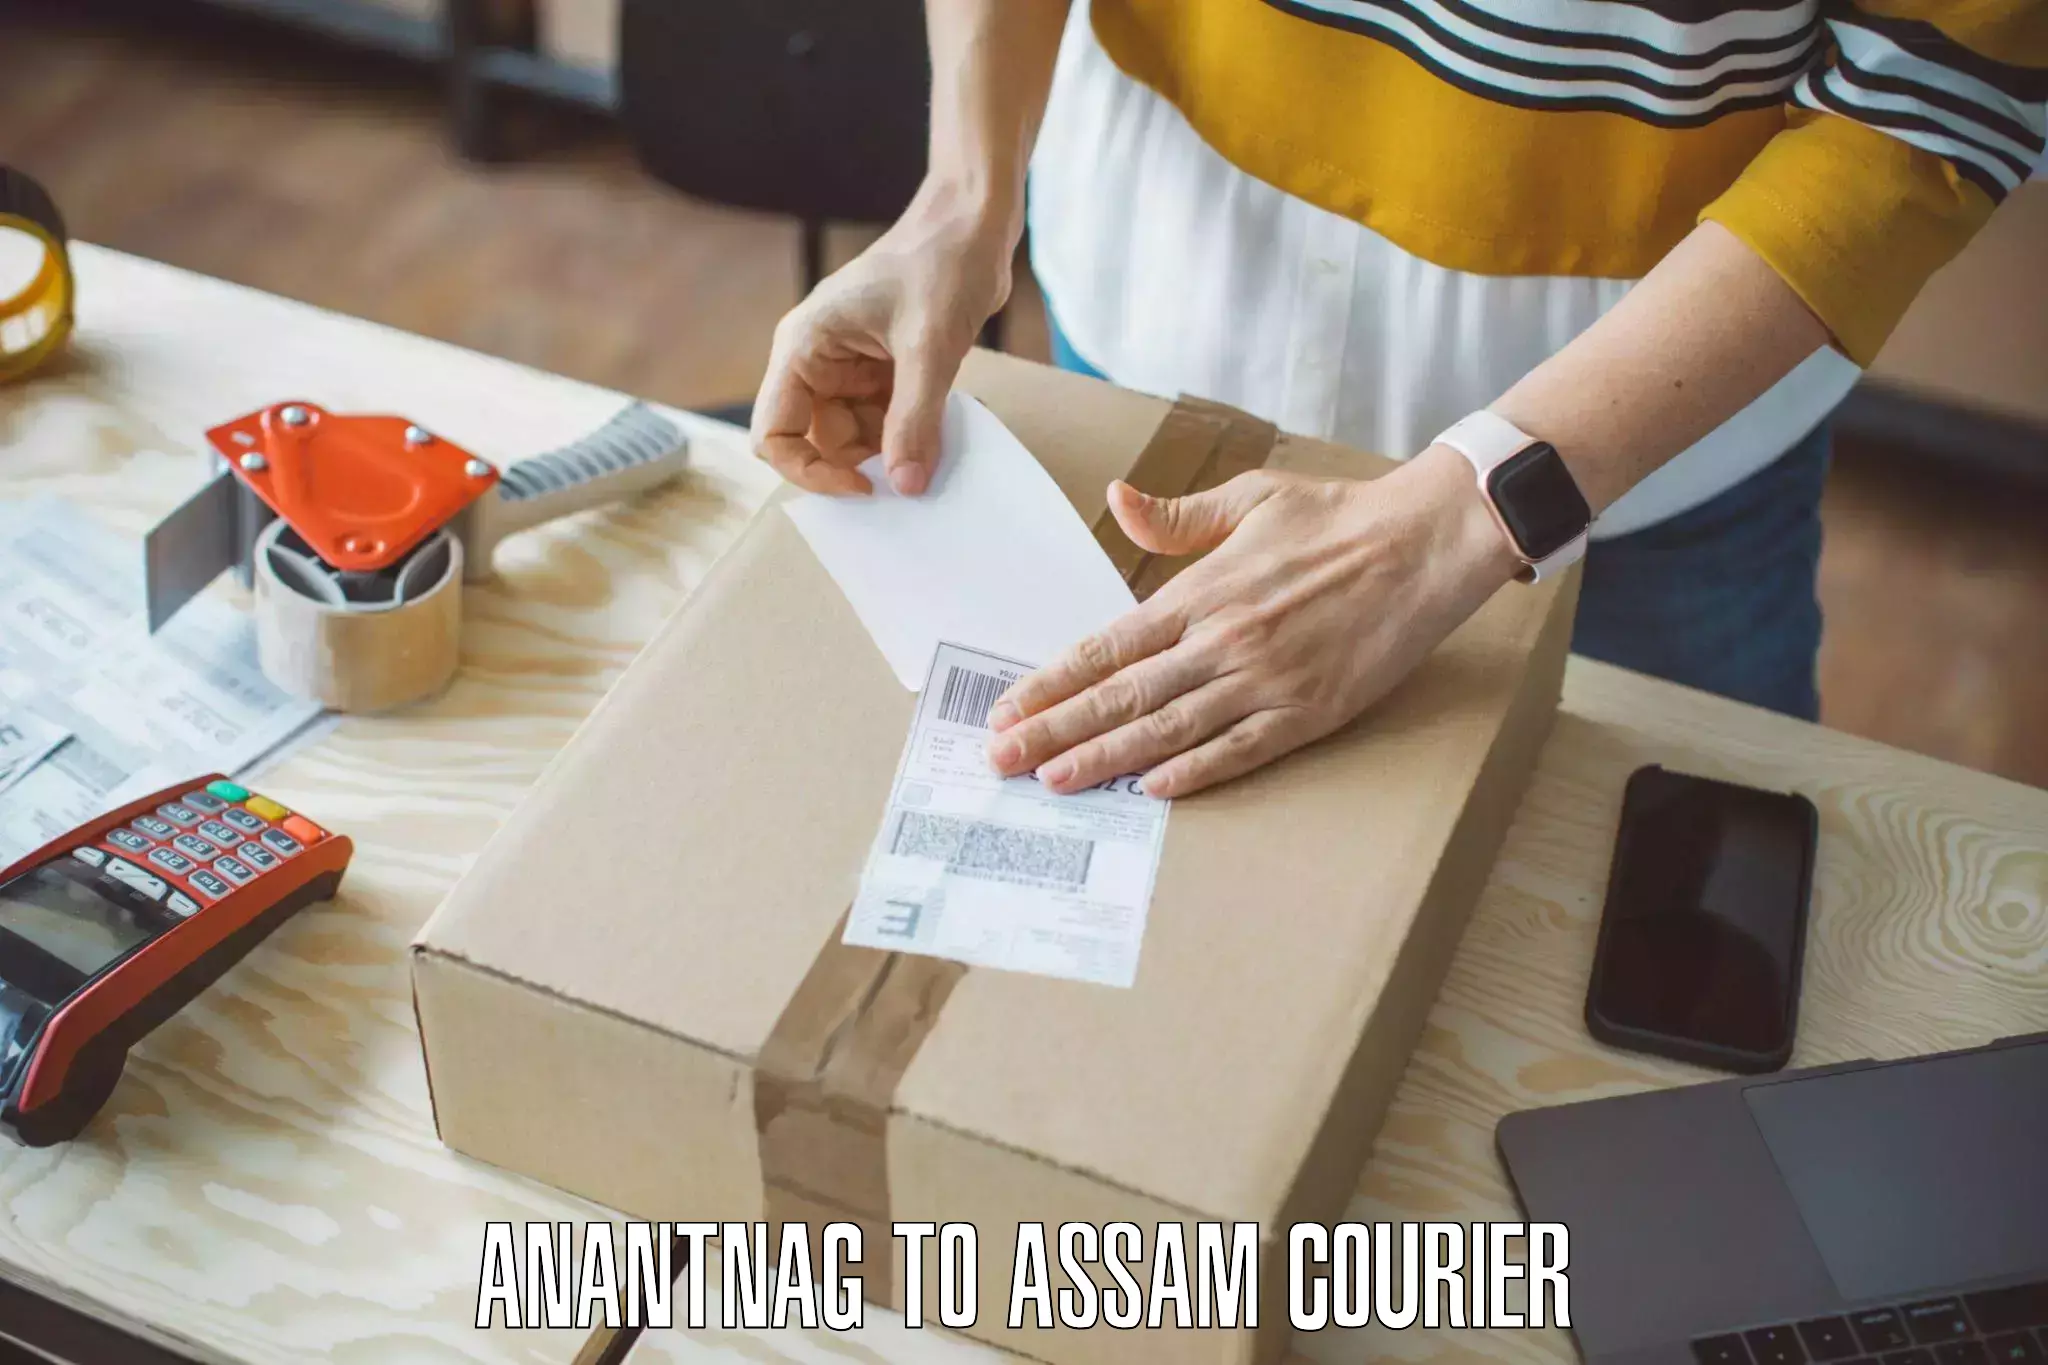 Furniture moving experts Anantnag to Assam